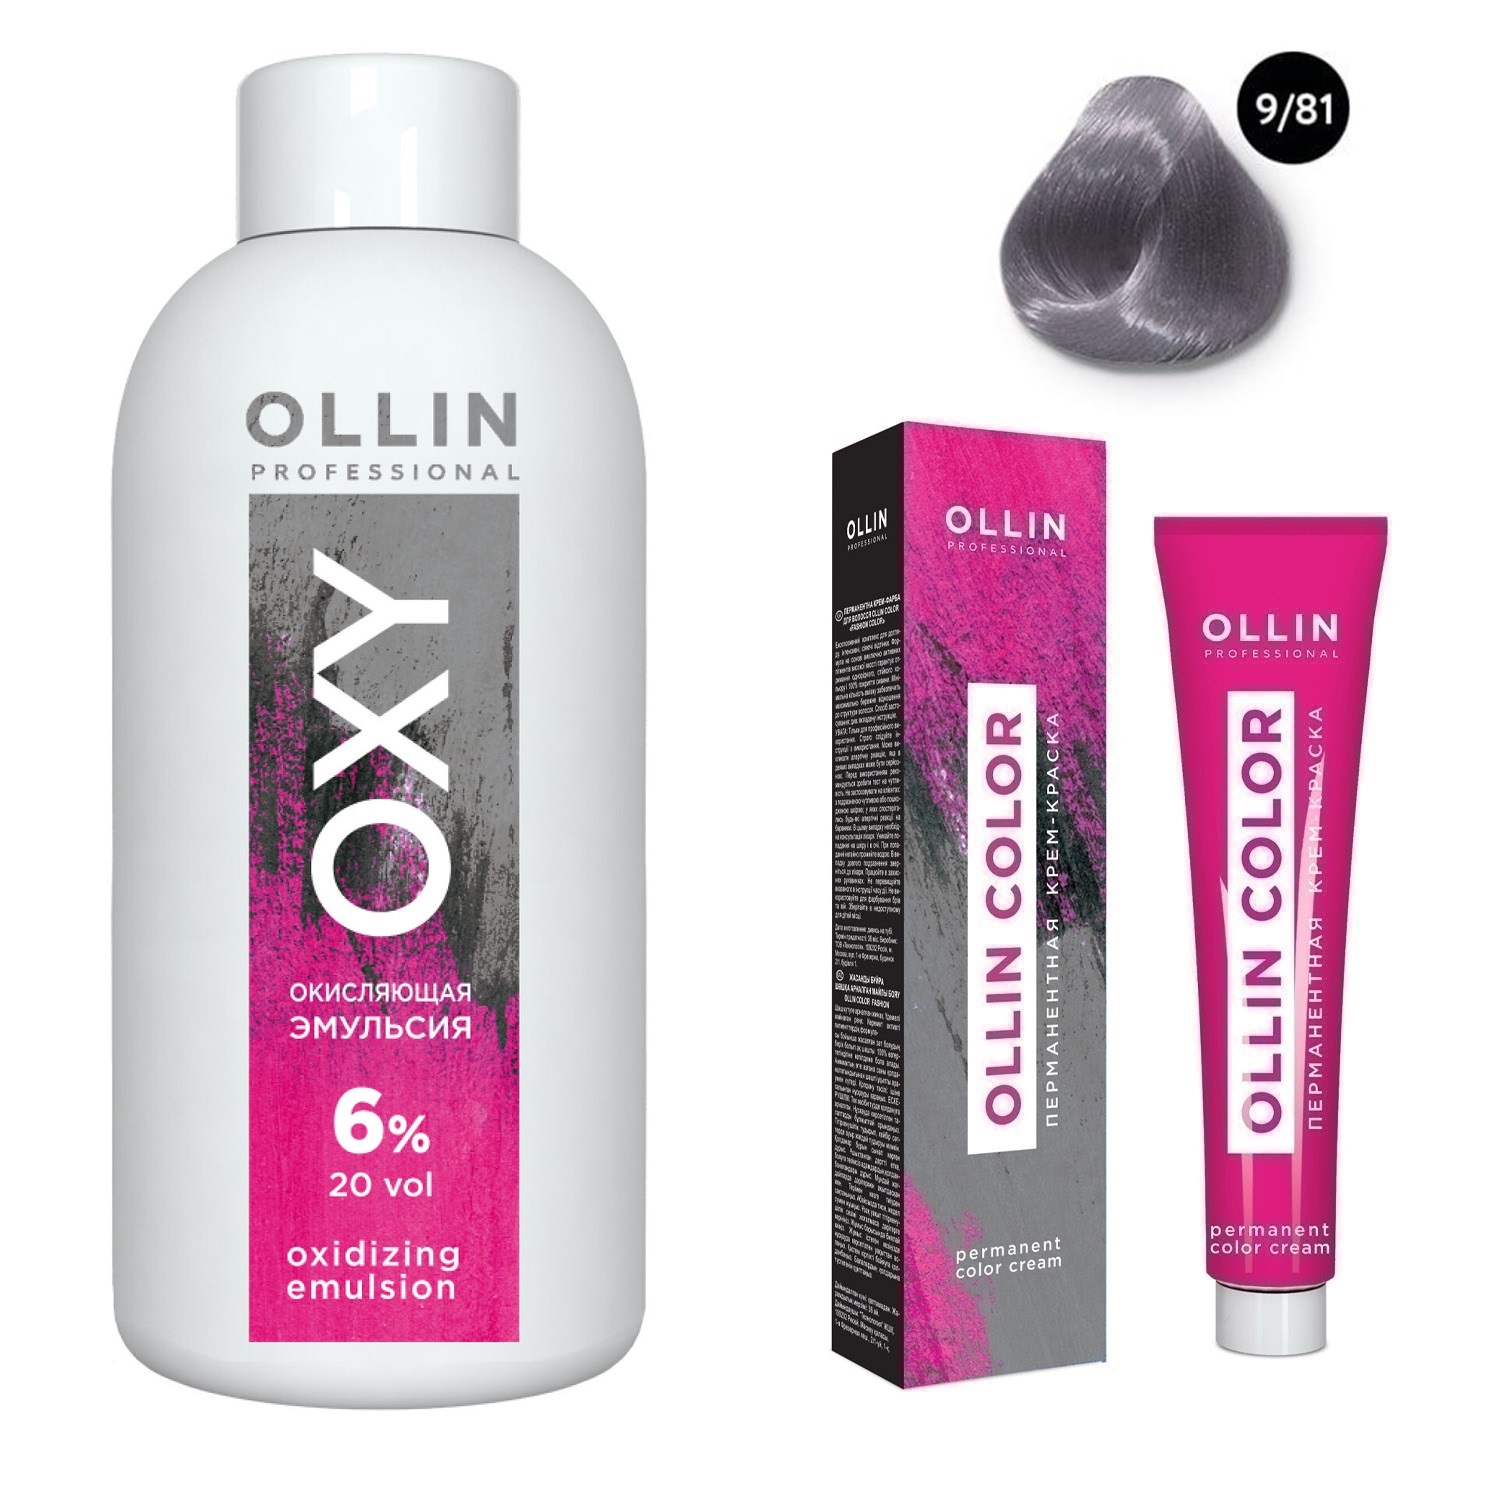 Ollin Professional Набор Перманентная крем-краска для волос Ollin Color оттенок 9/81 блондин жемчужно-пепельный 100 мл + Окисляющая эмульсия Oxy 6% 150 мл (Ollin Professional, Ollin Color)